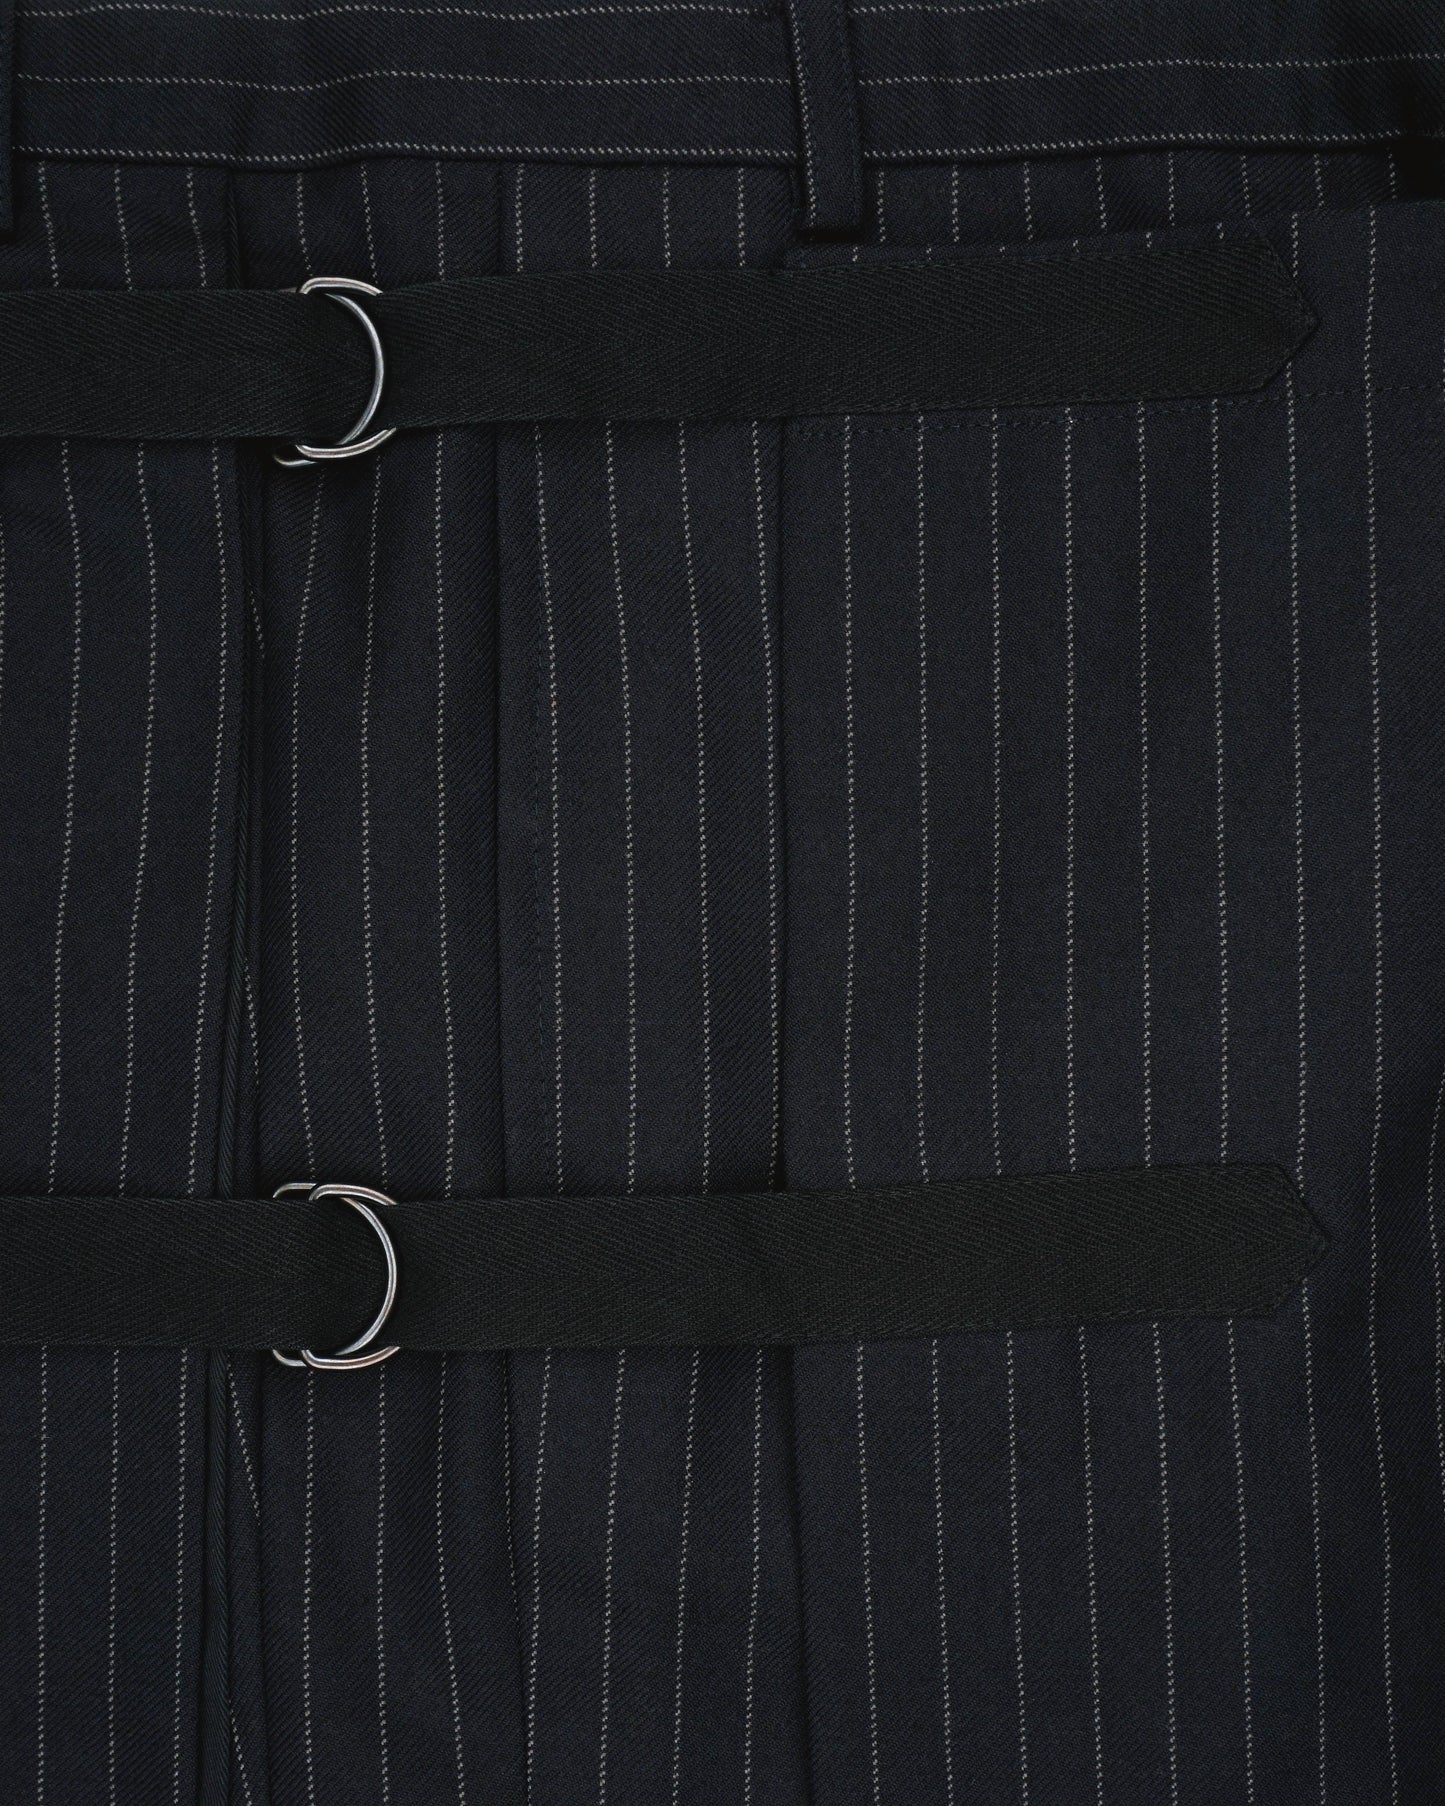 Dries van Noten AW15 Pinstripe Bondage Skirt Pants